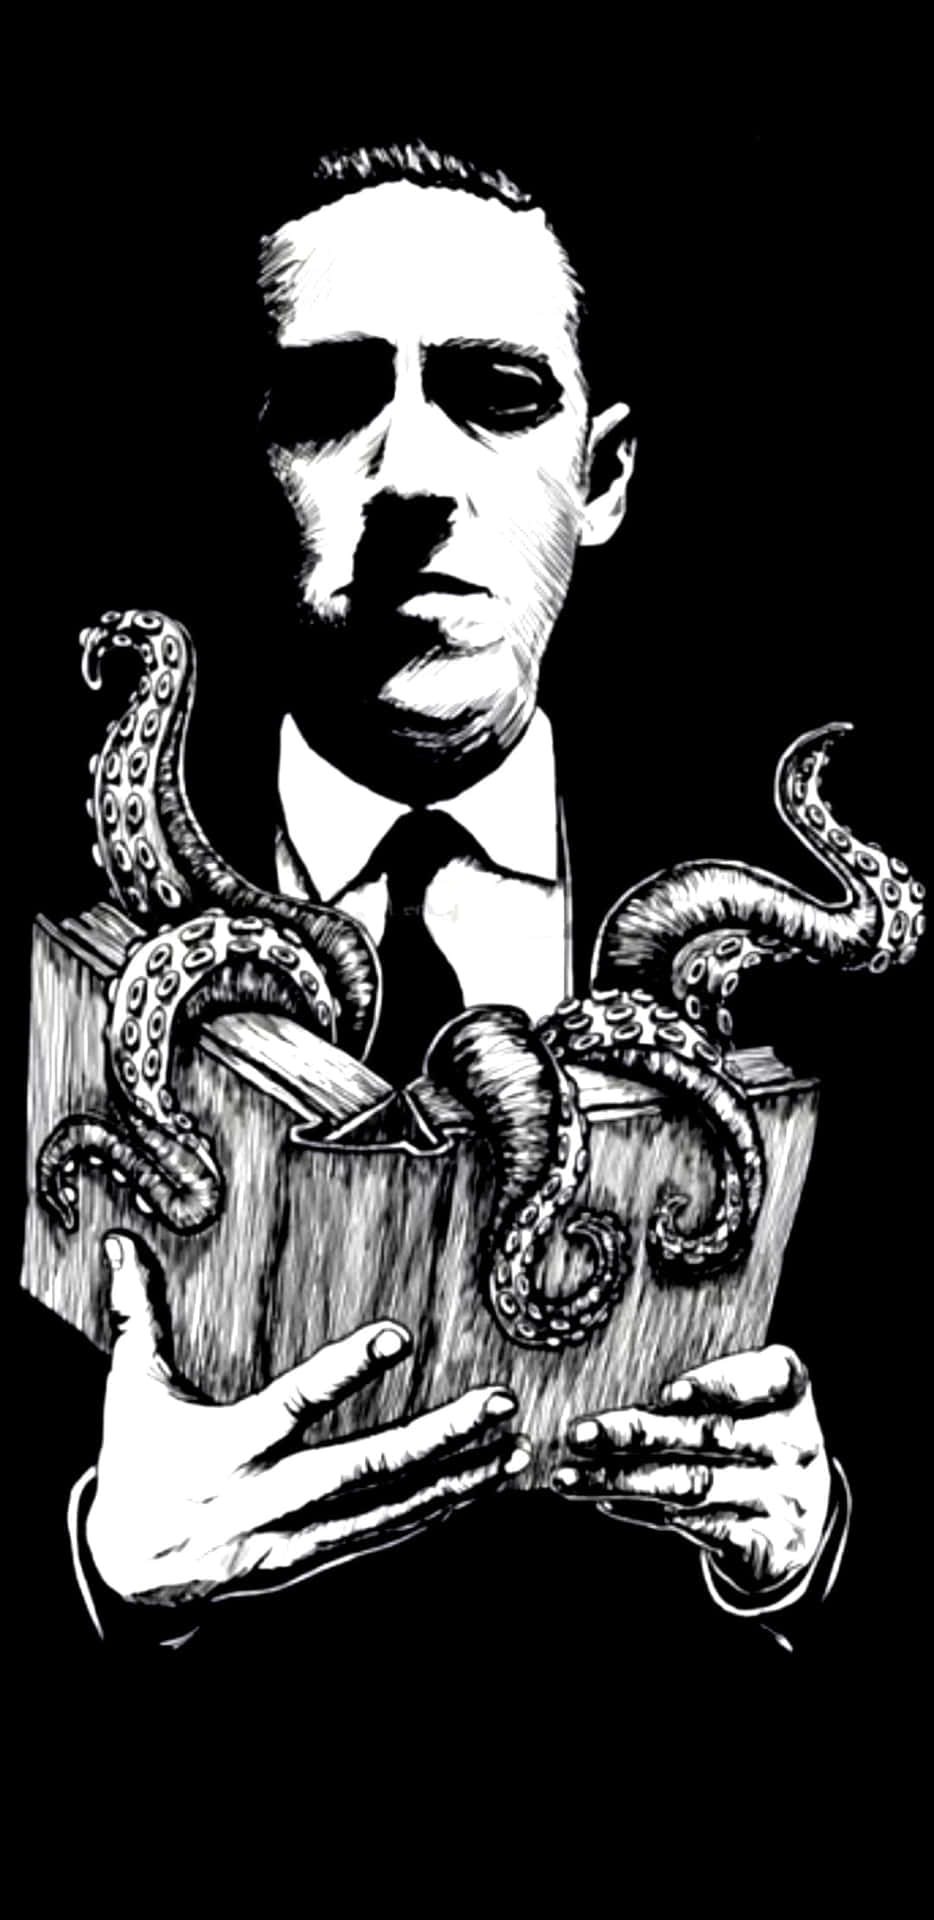 Tauchensie Ein In Die Albtraumhafte Welt Von H.p. Lovecraft.